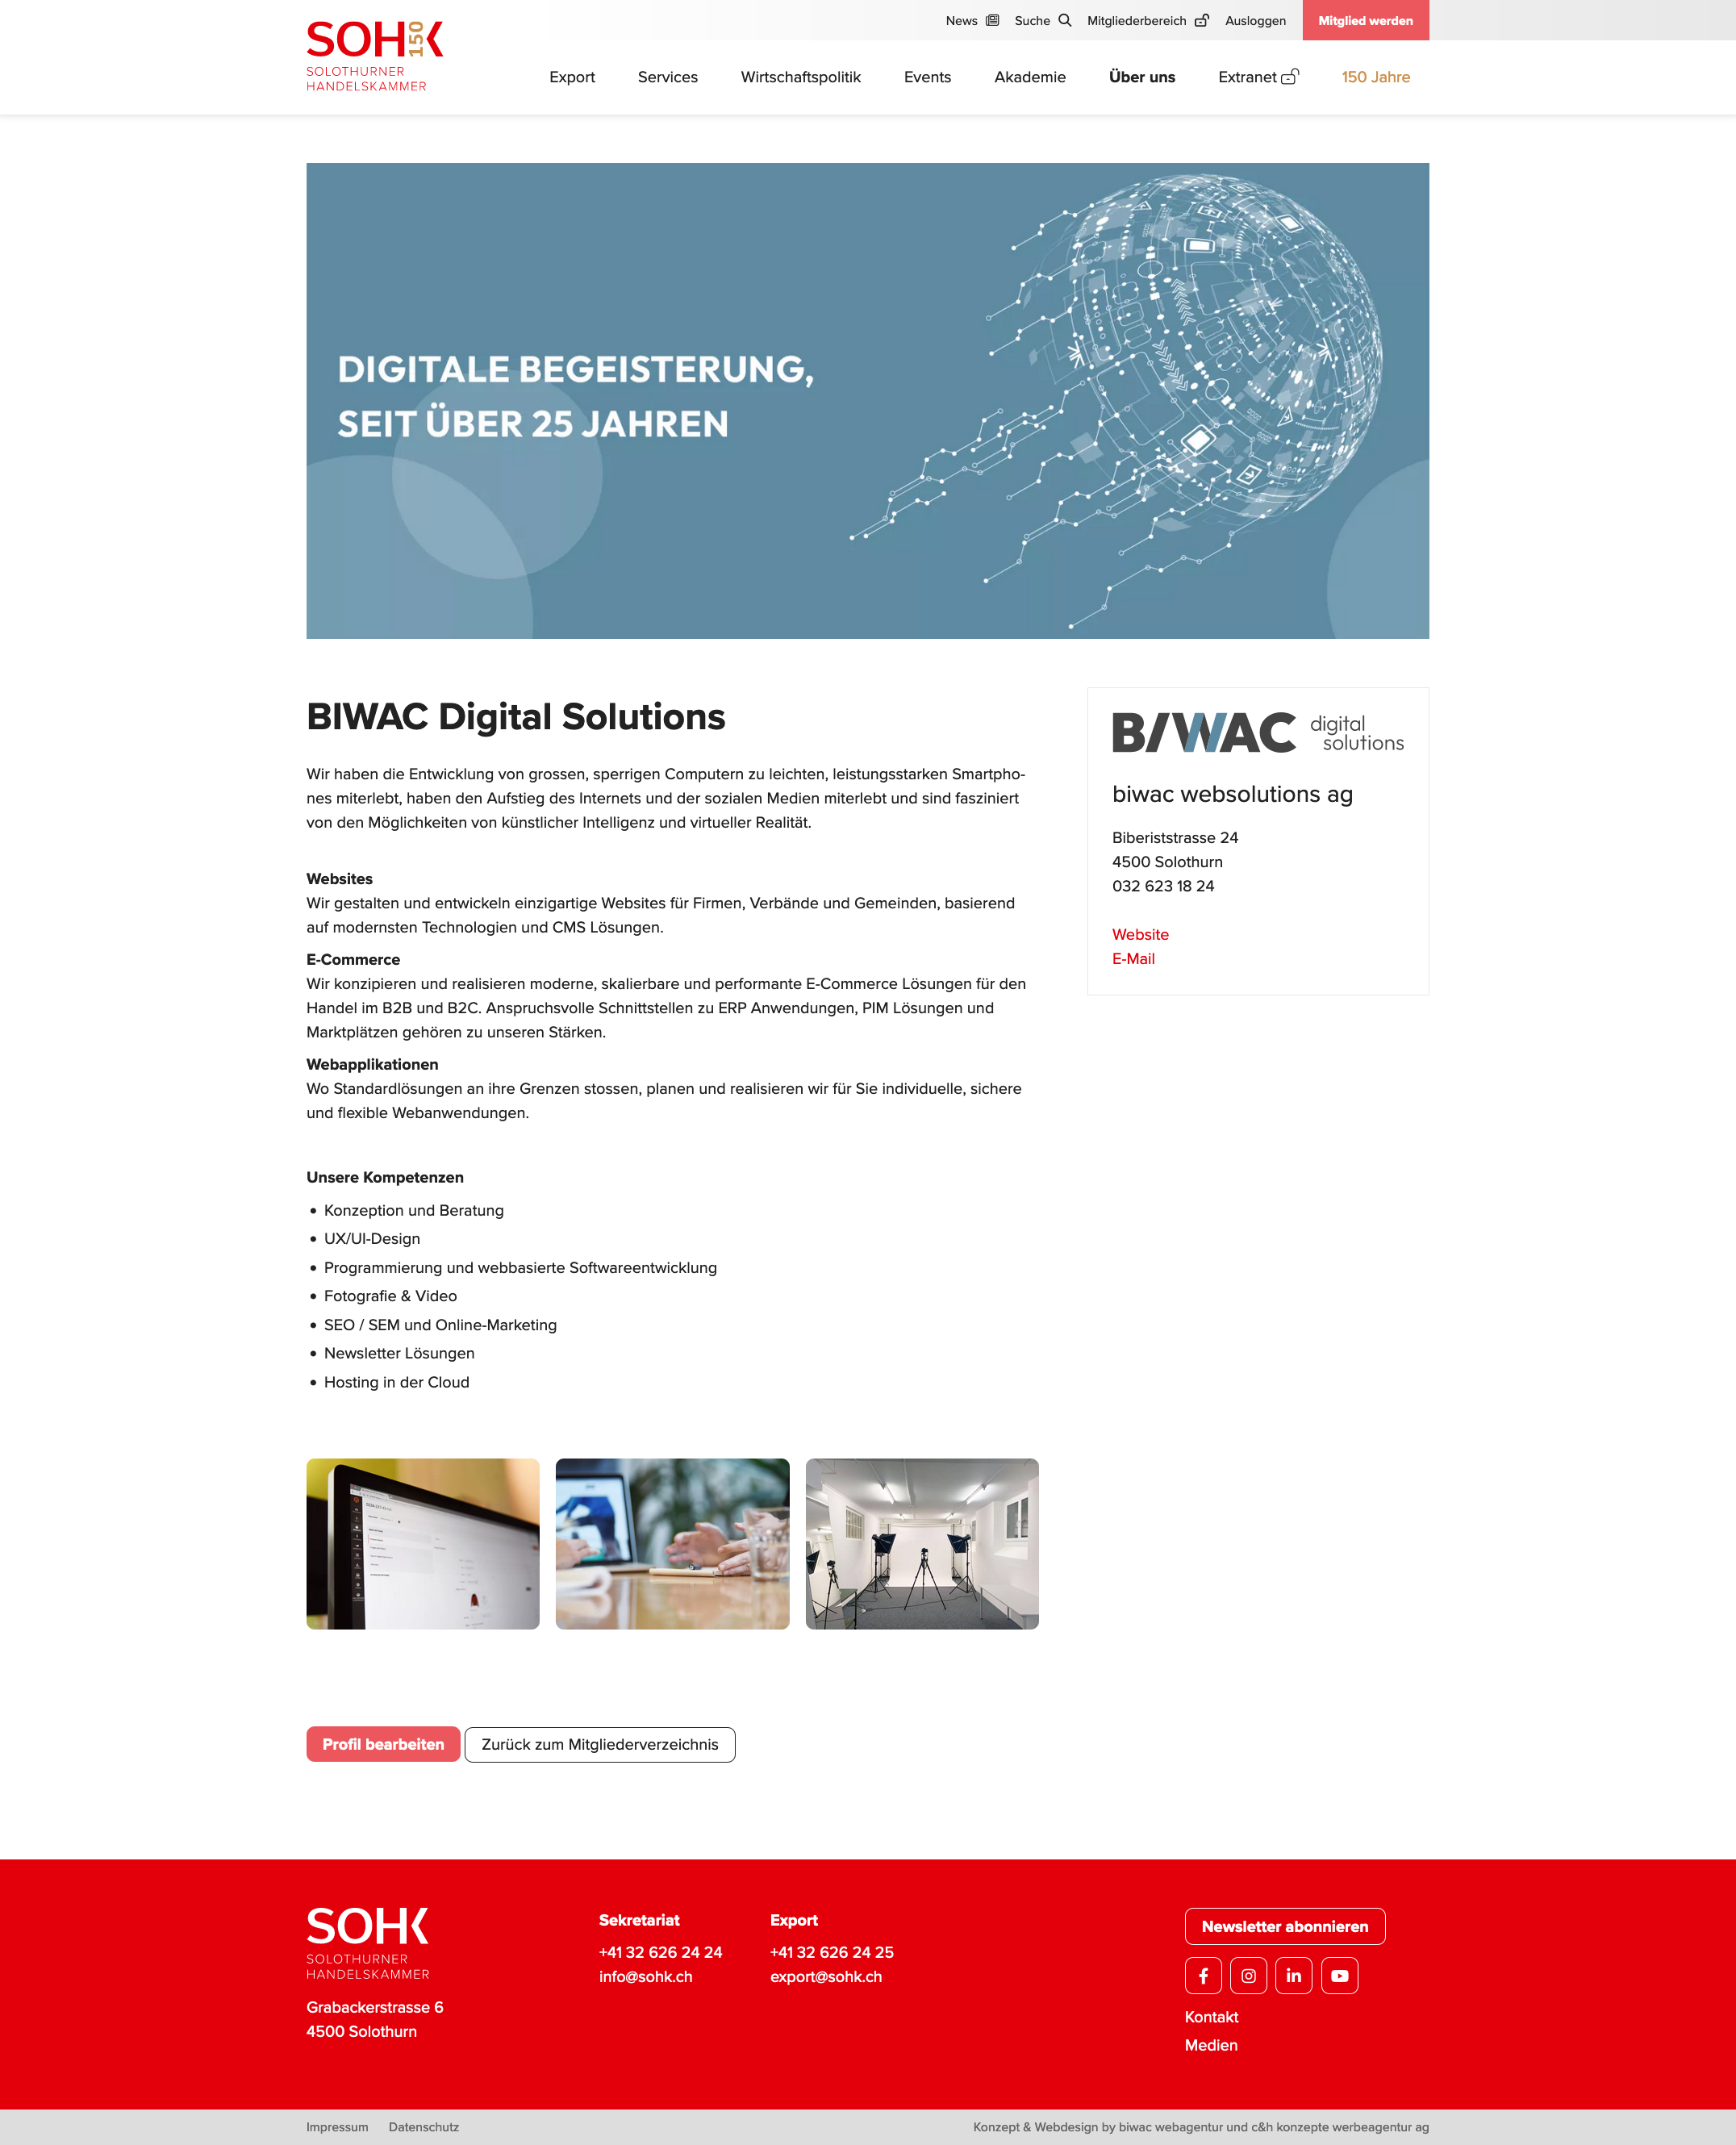 sohk Firmenprofil BIWAC Digital Solutions